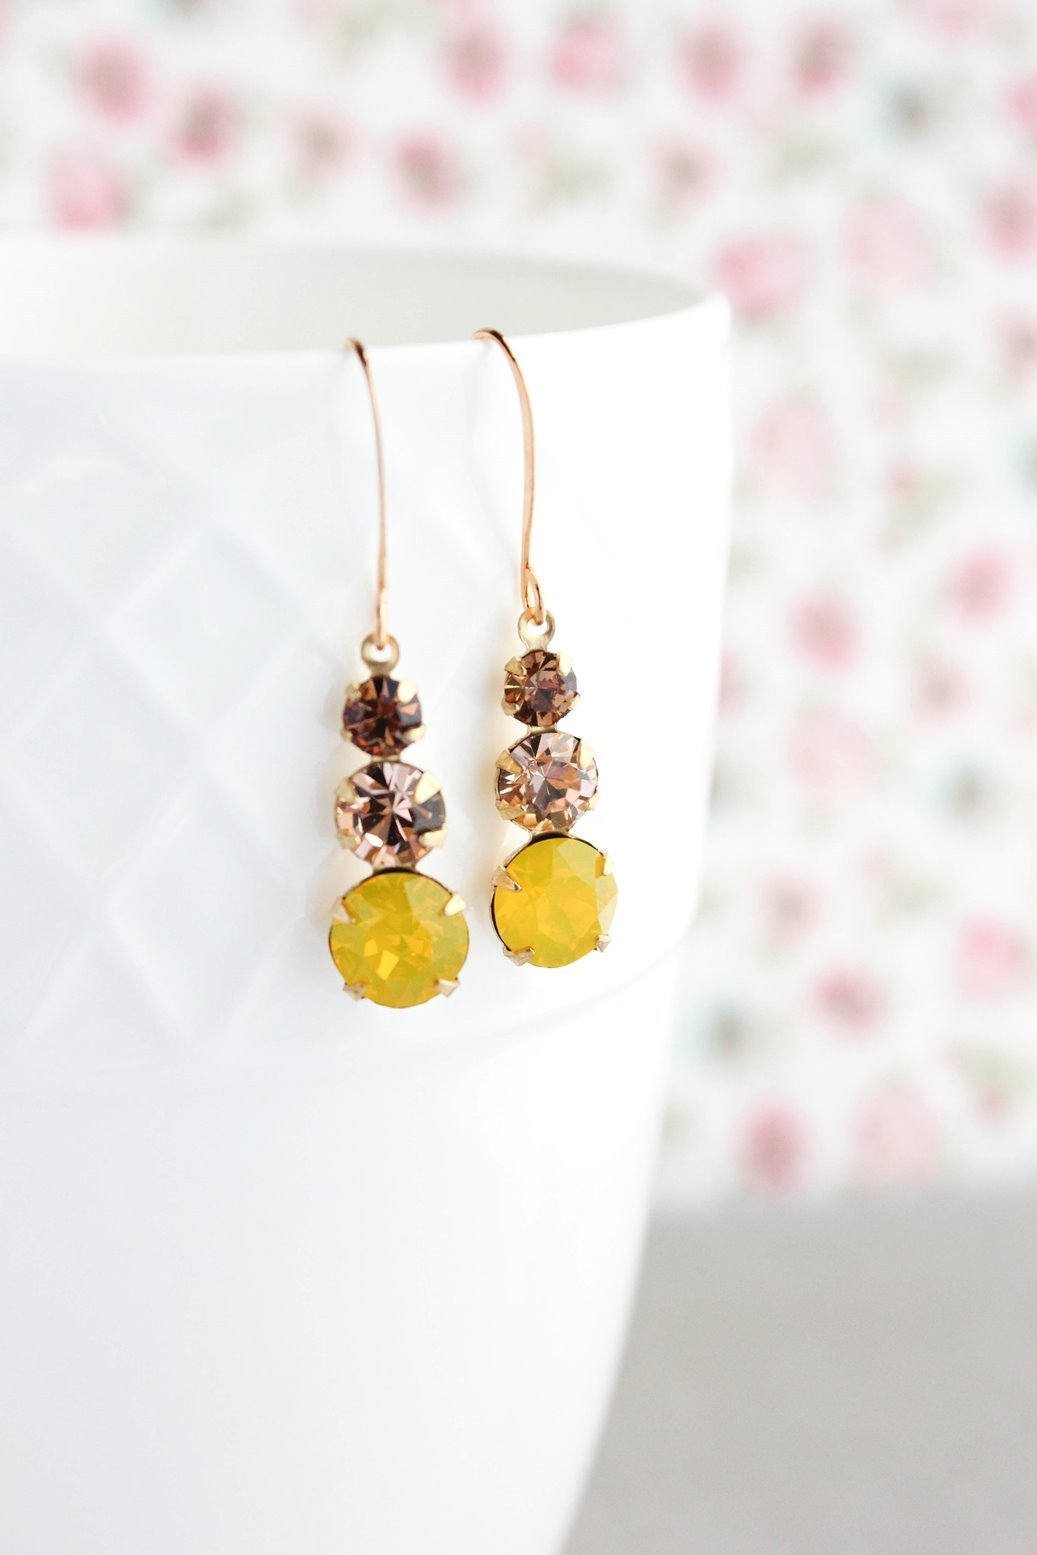 Three Jewel Drop Earrings - Yellow